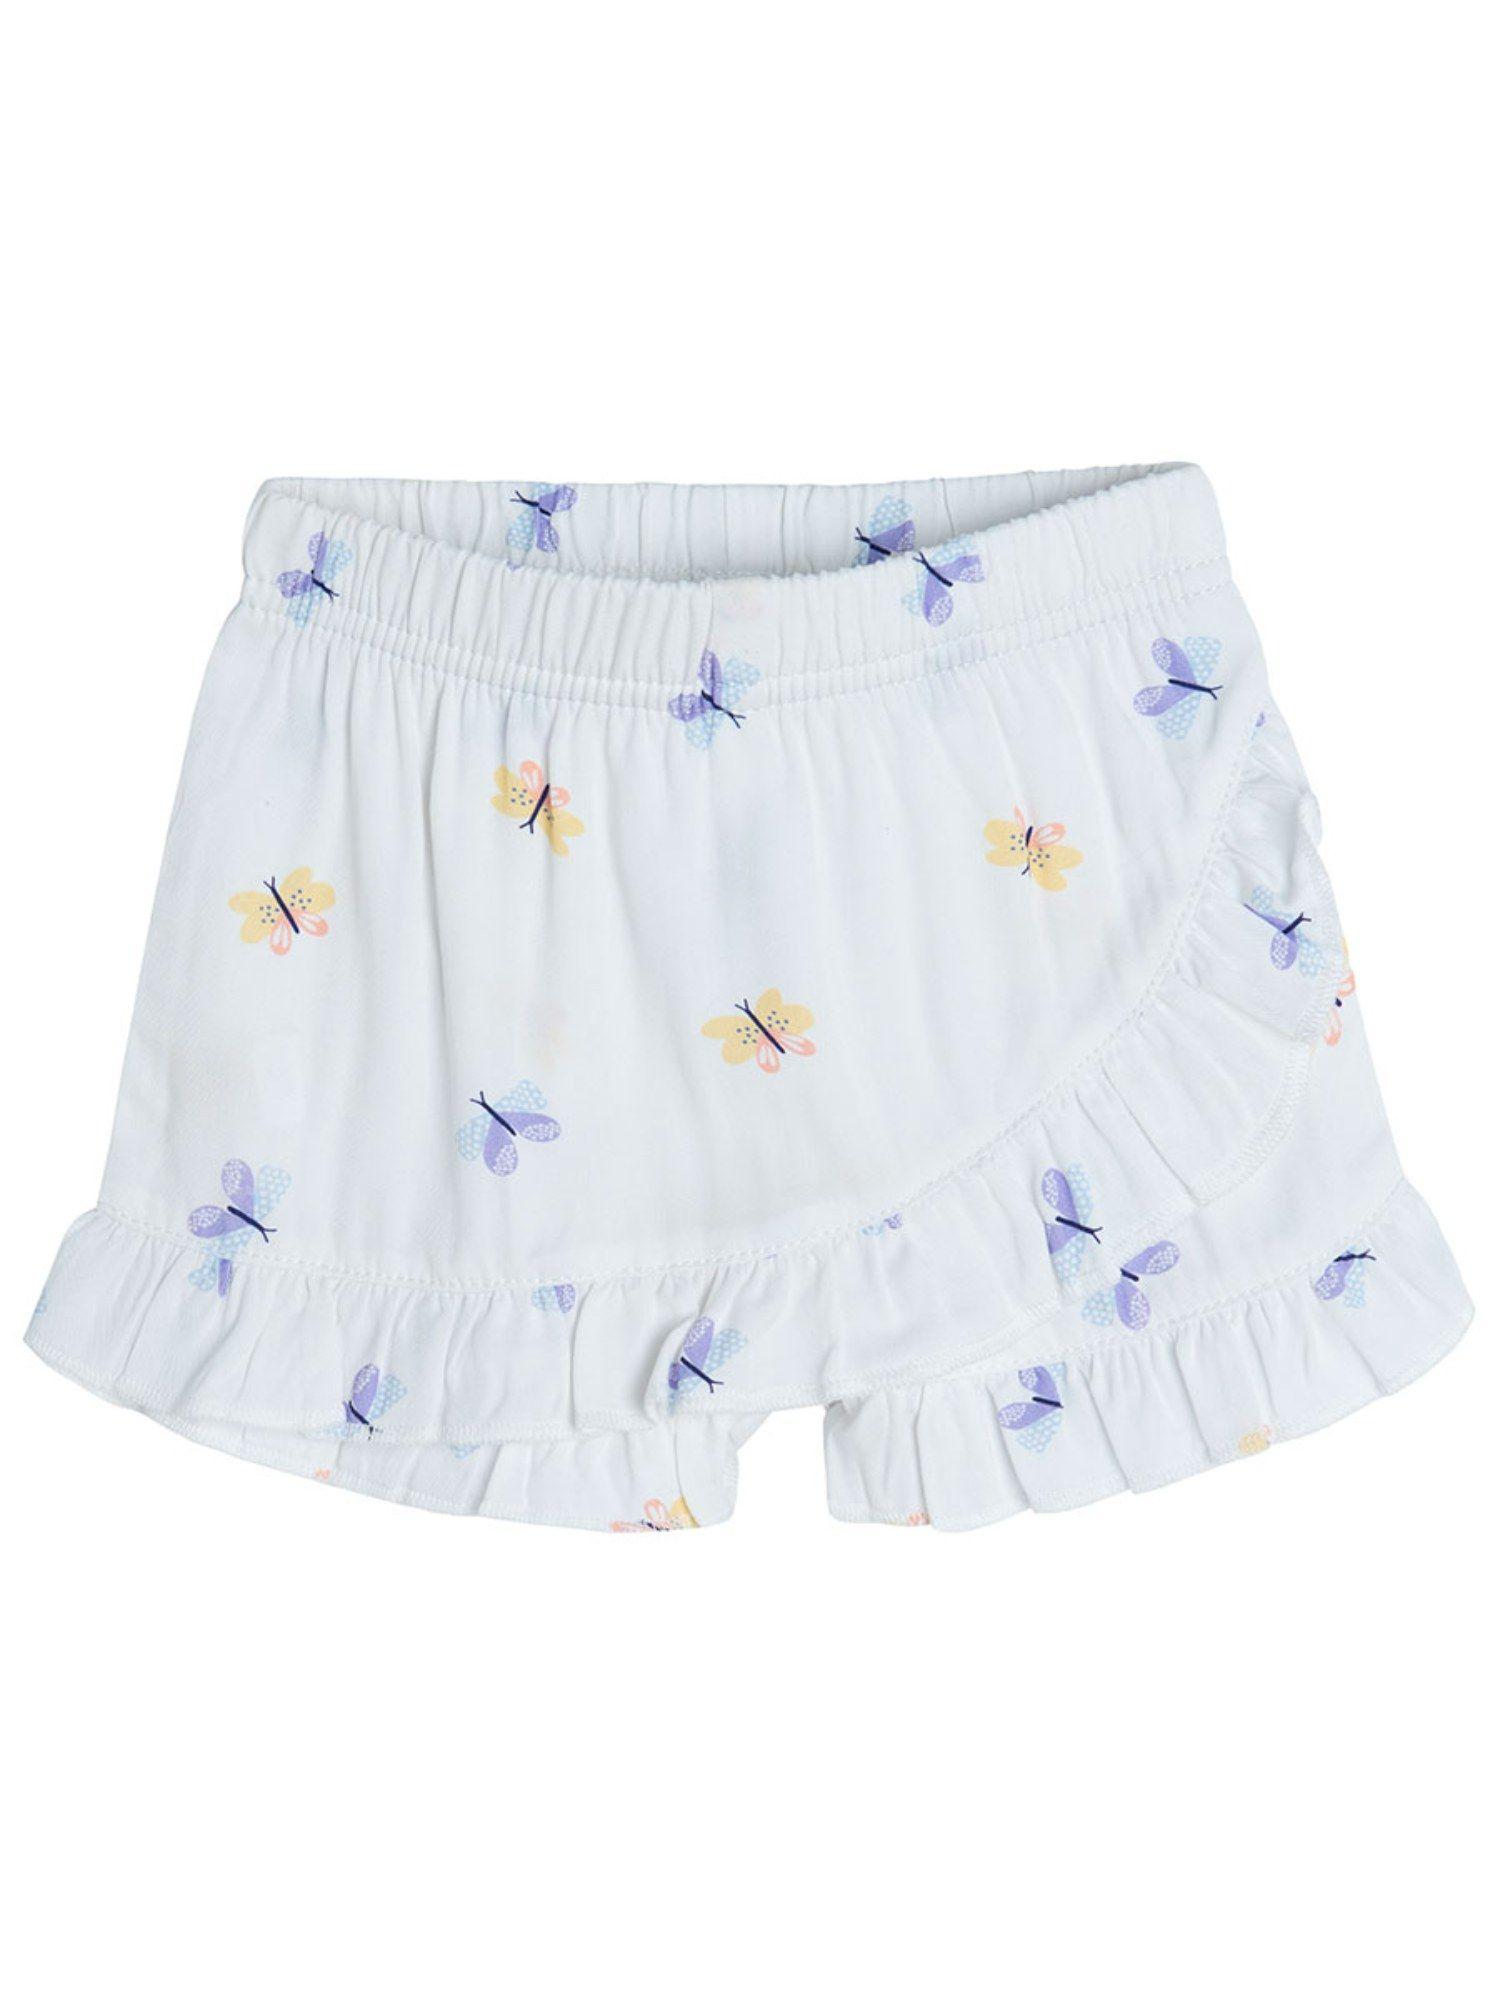 smyk-girls-white-printed-shorts